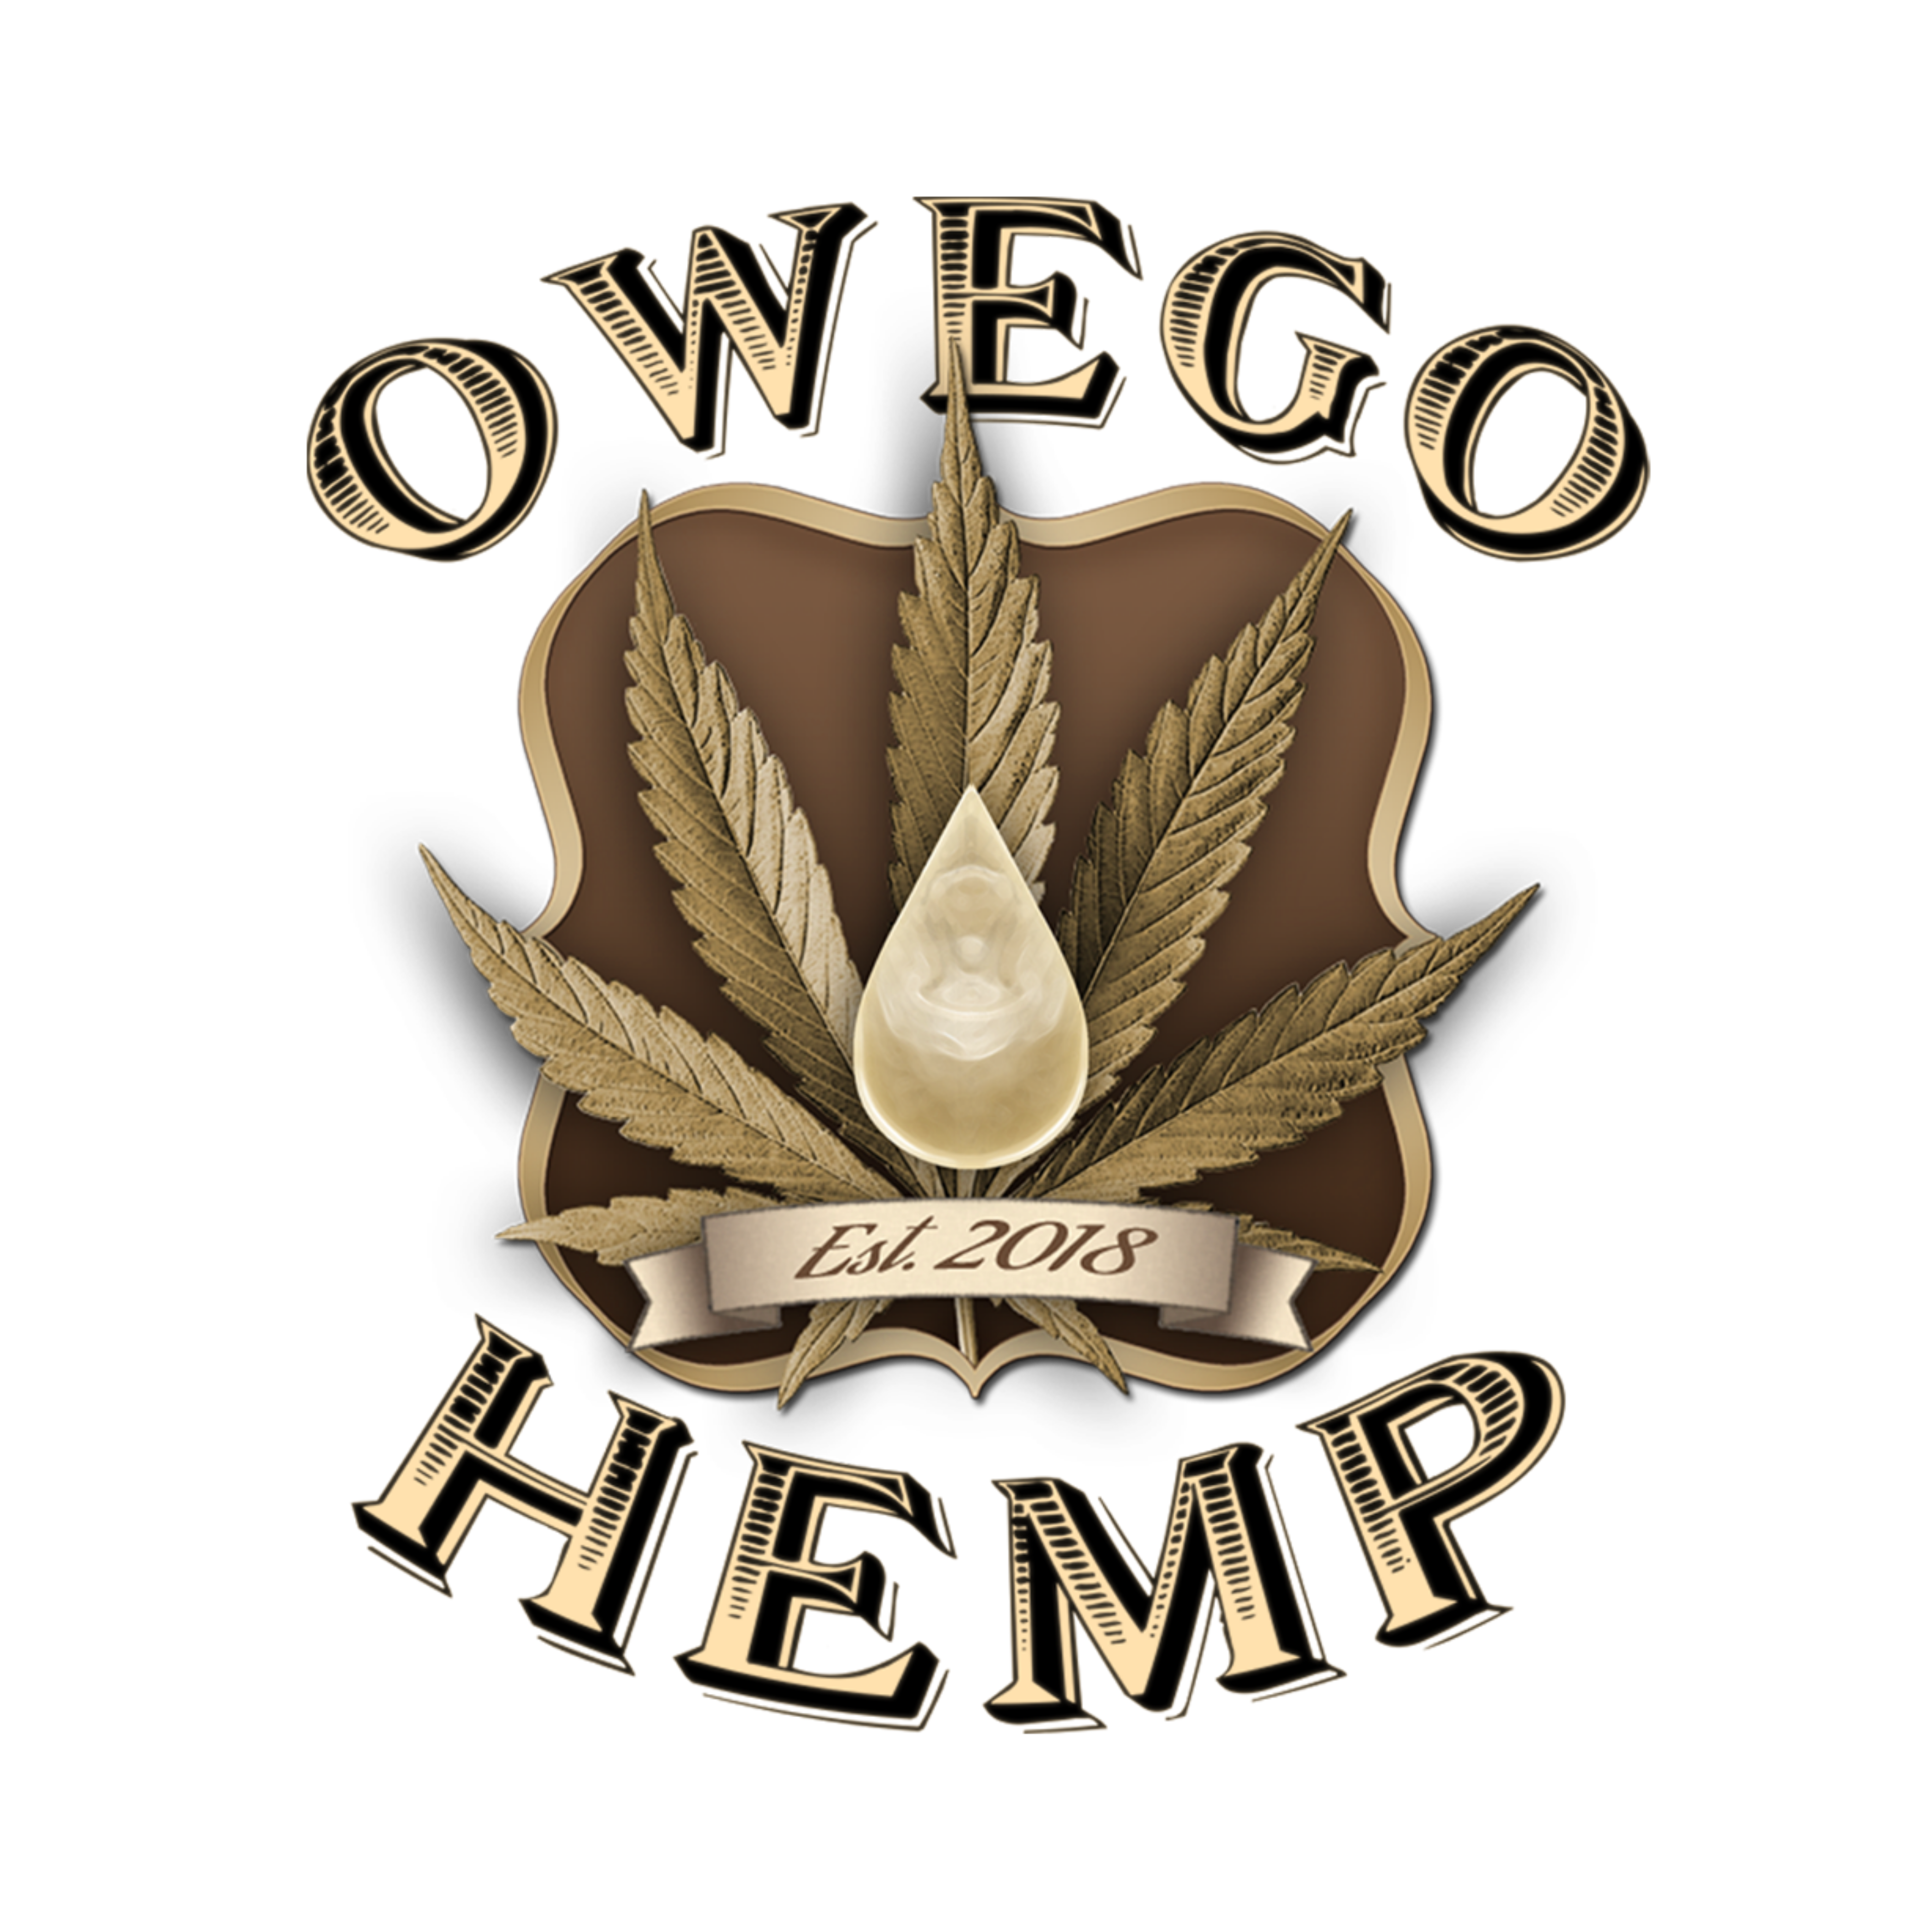 Owego Hemp LLC